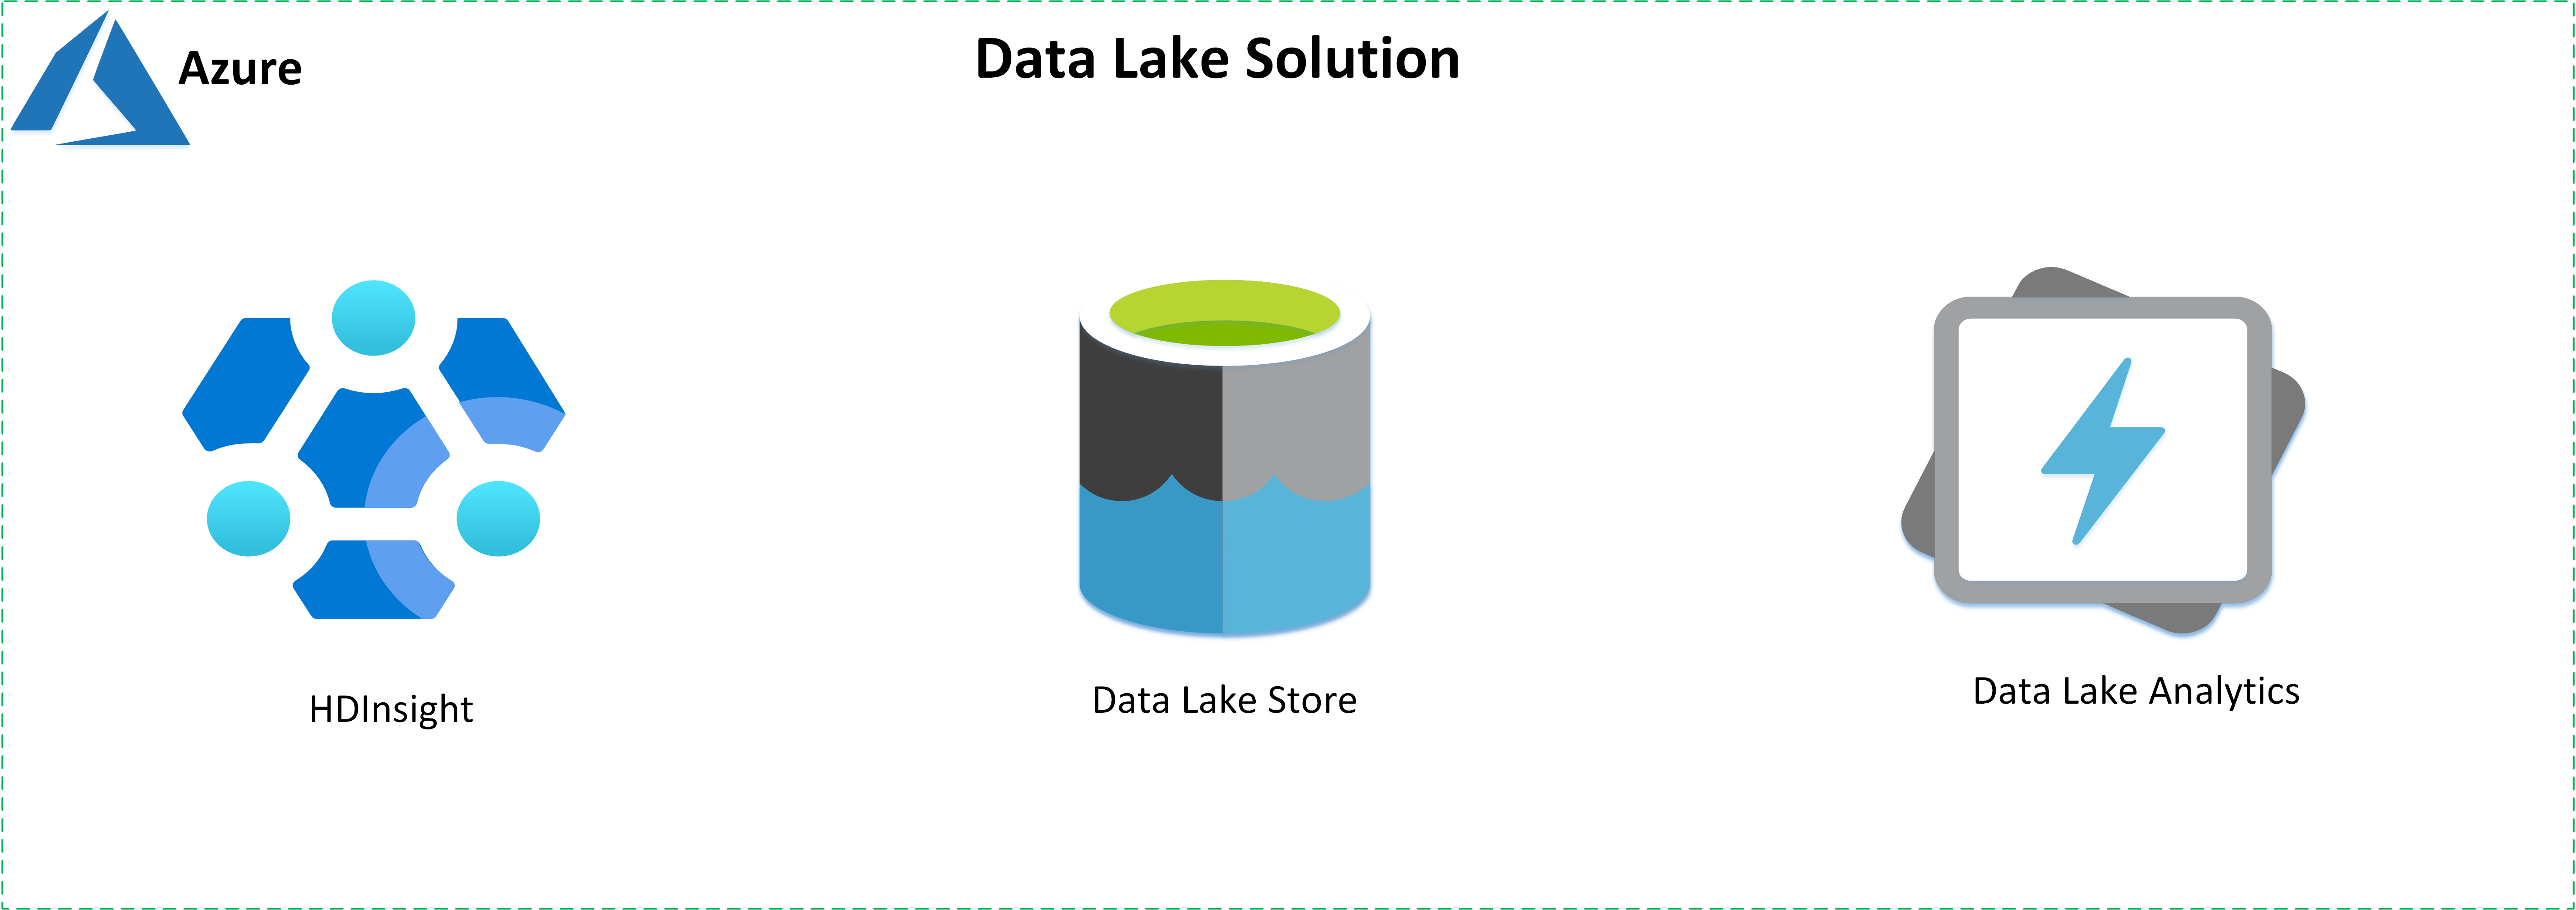 Diagramm: Wichtigste Data Lake-Dienste